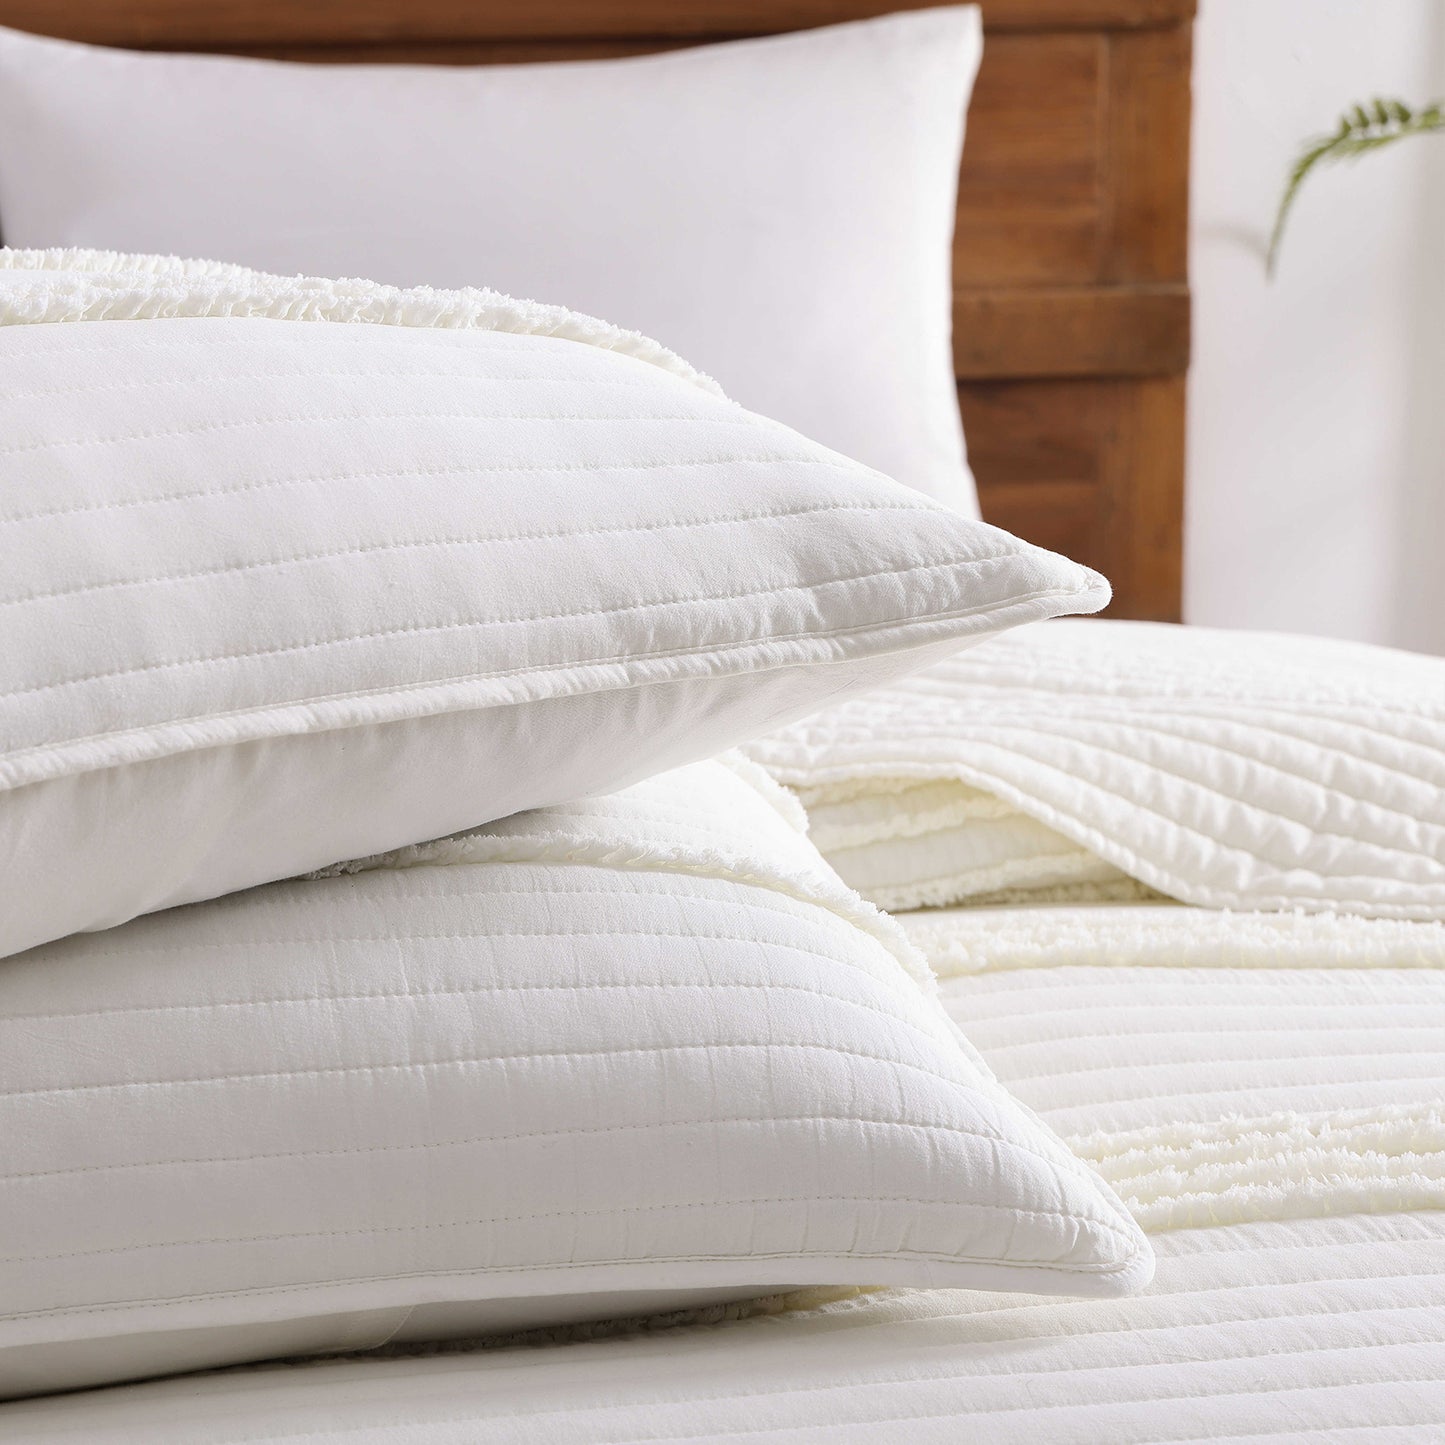 CarsonWorks Quilt Set King Size Bedding Set Soft Boho Bedspreads